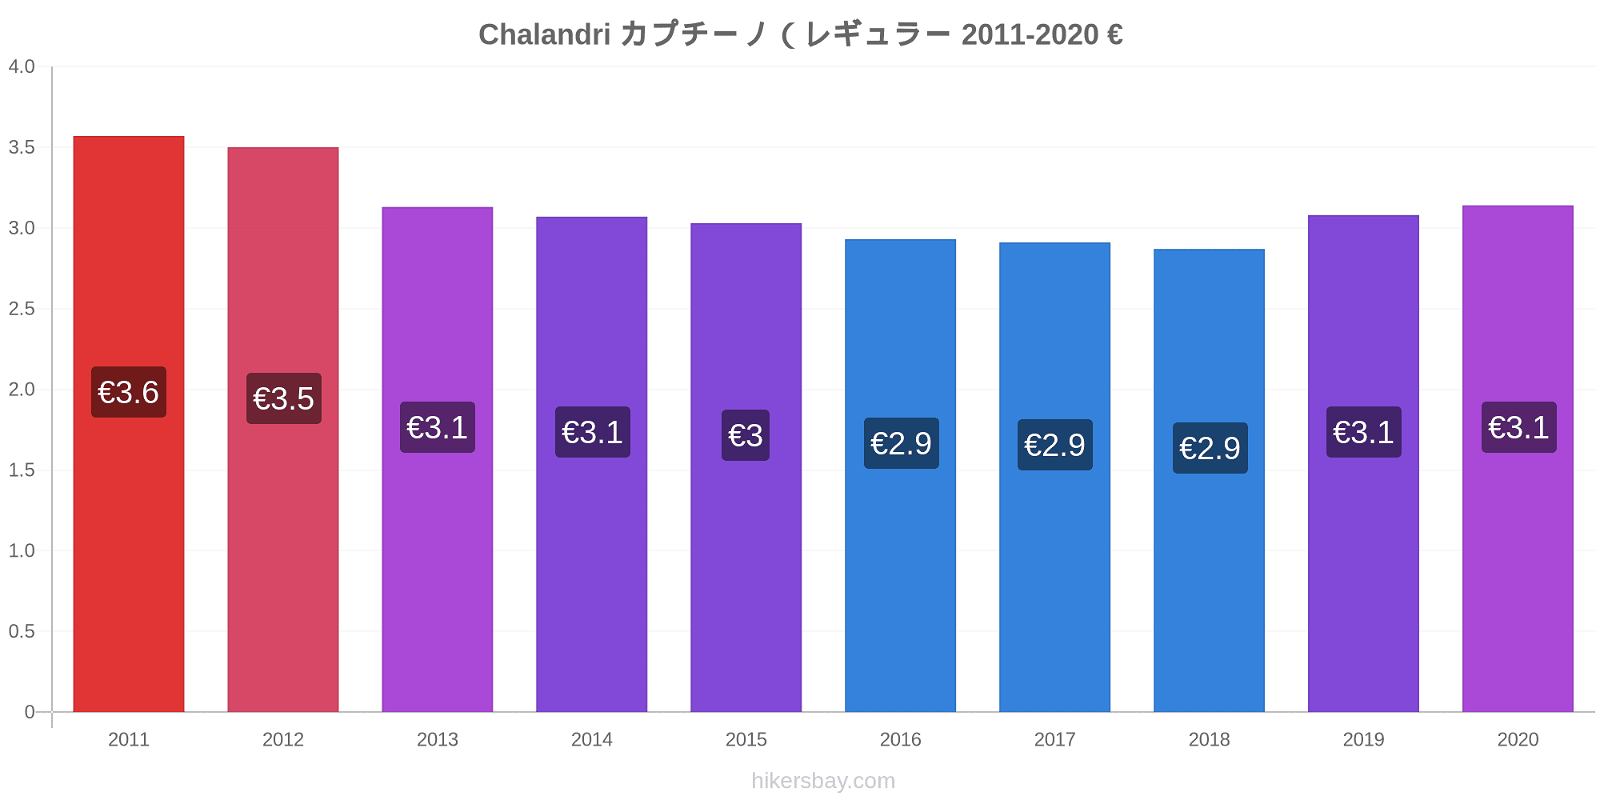 Chalandri 価格変更 カプチーノ (レギュラー) hikersbay.com